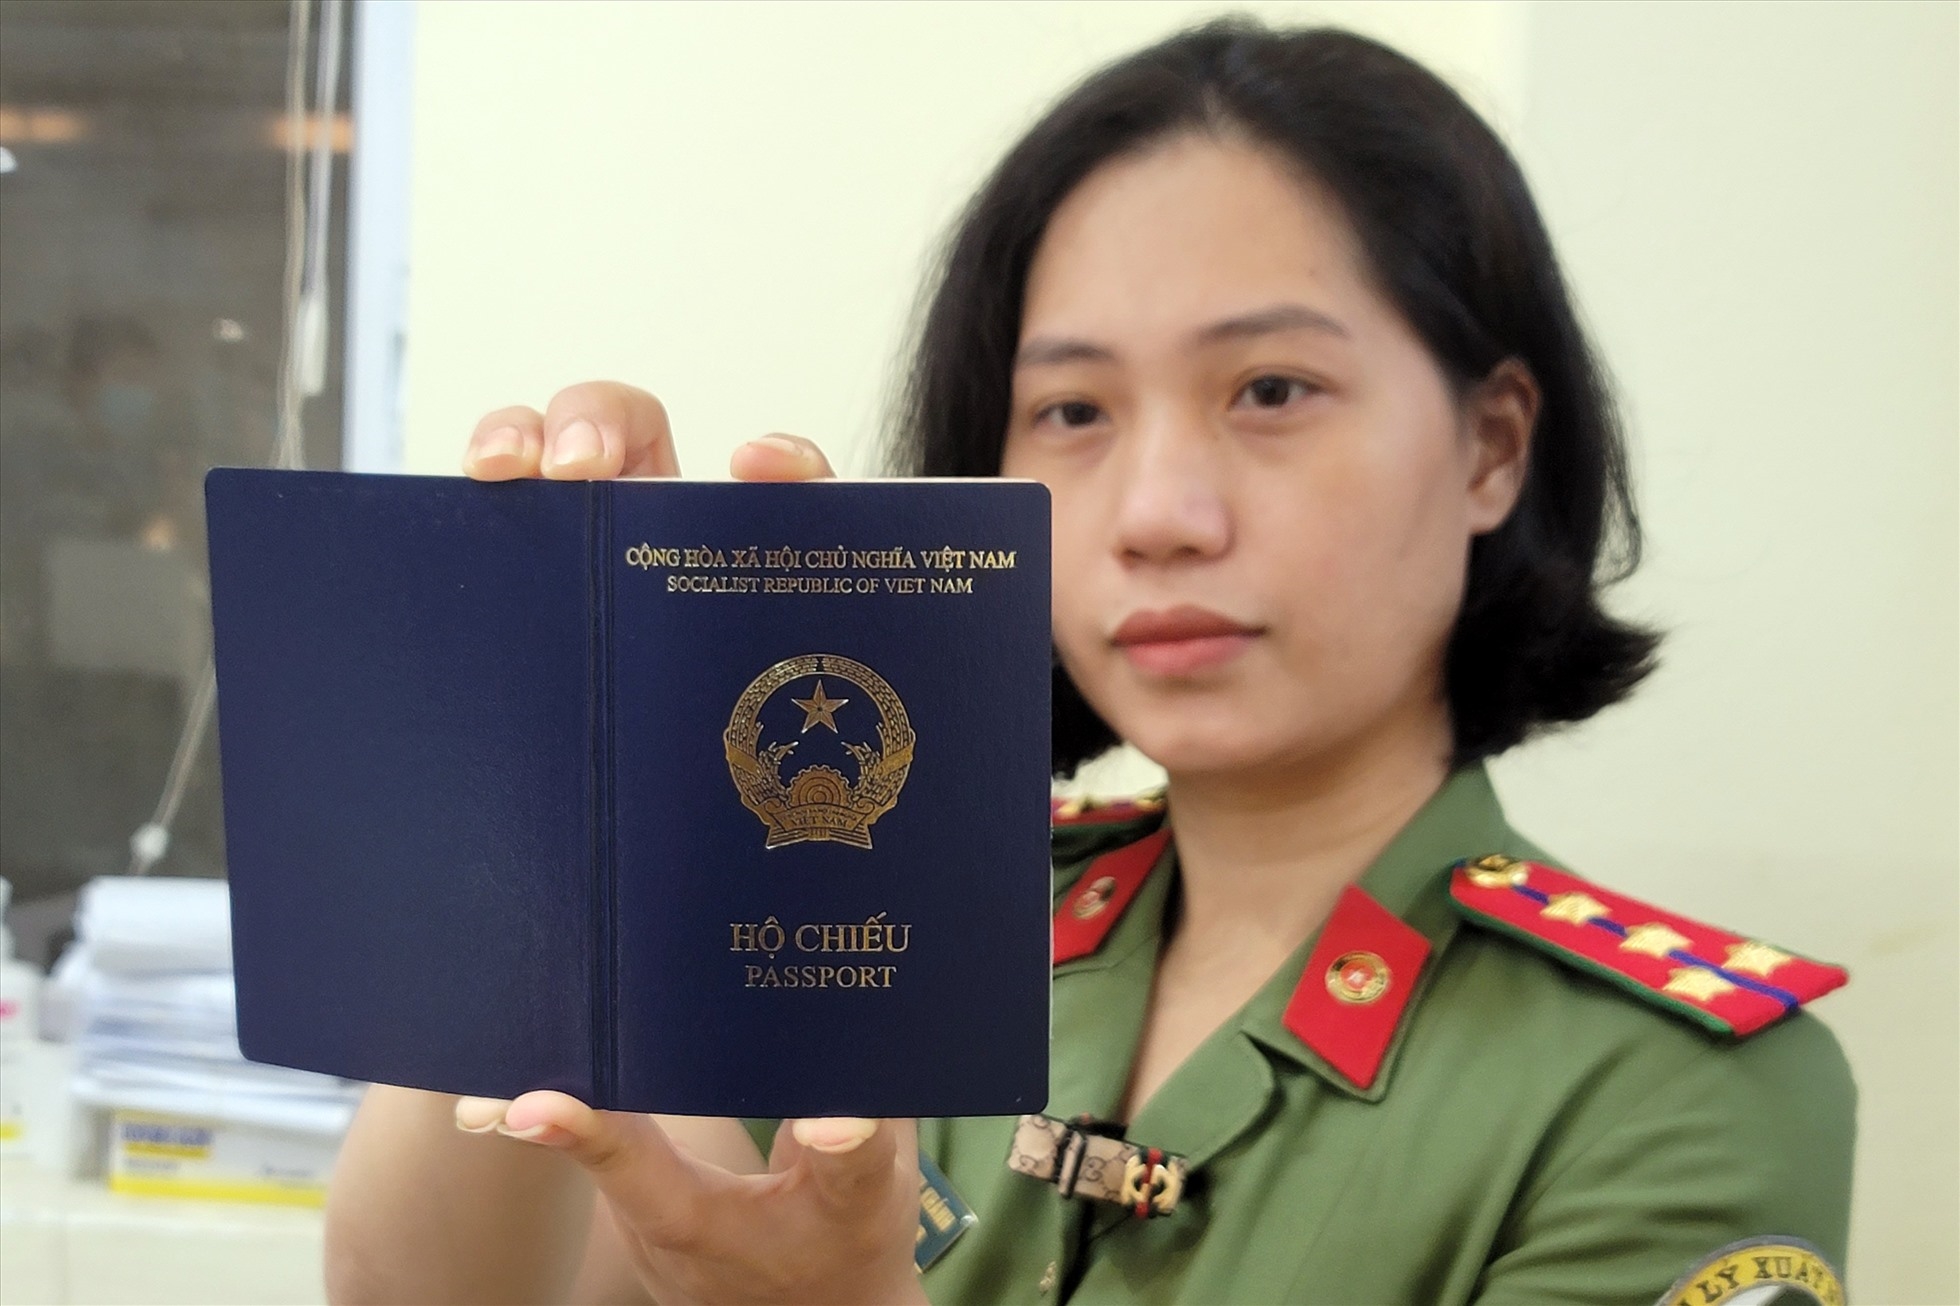 Việt Nam cấp hộ chiếu gắn chip điện tử từ ngày 01/03/2023